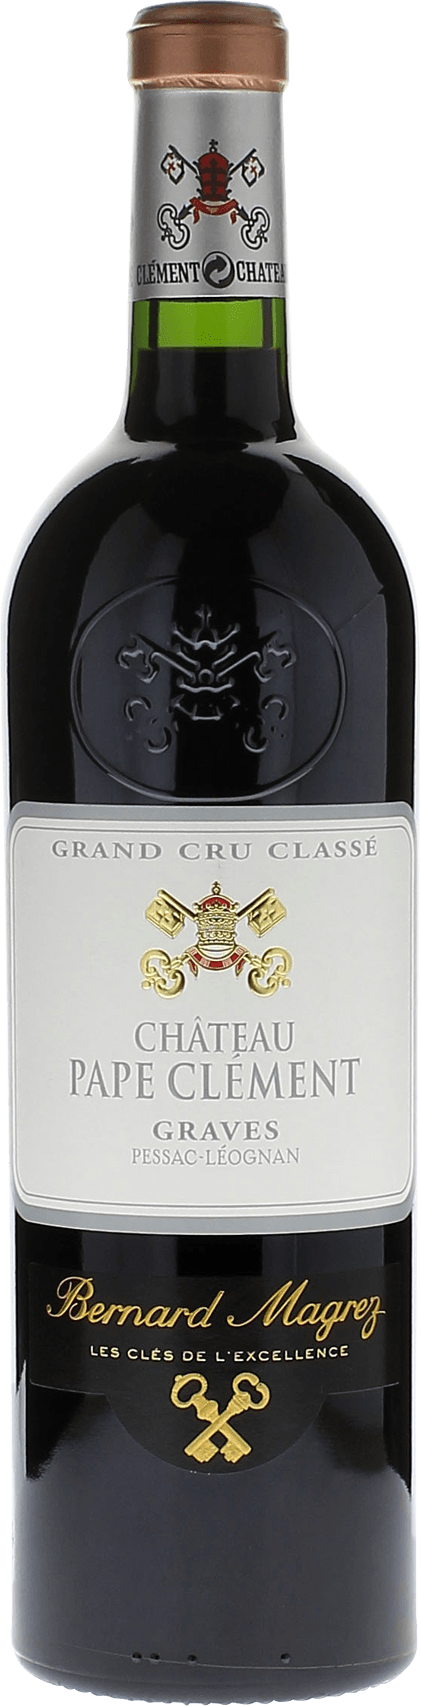 Pape clement rouge 2002 Grand Cru Class Graves, Bordeaux rouge